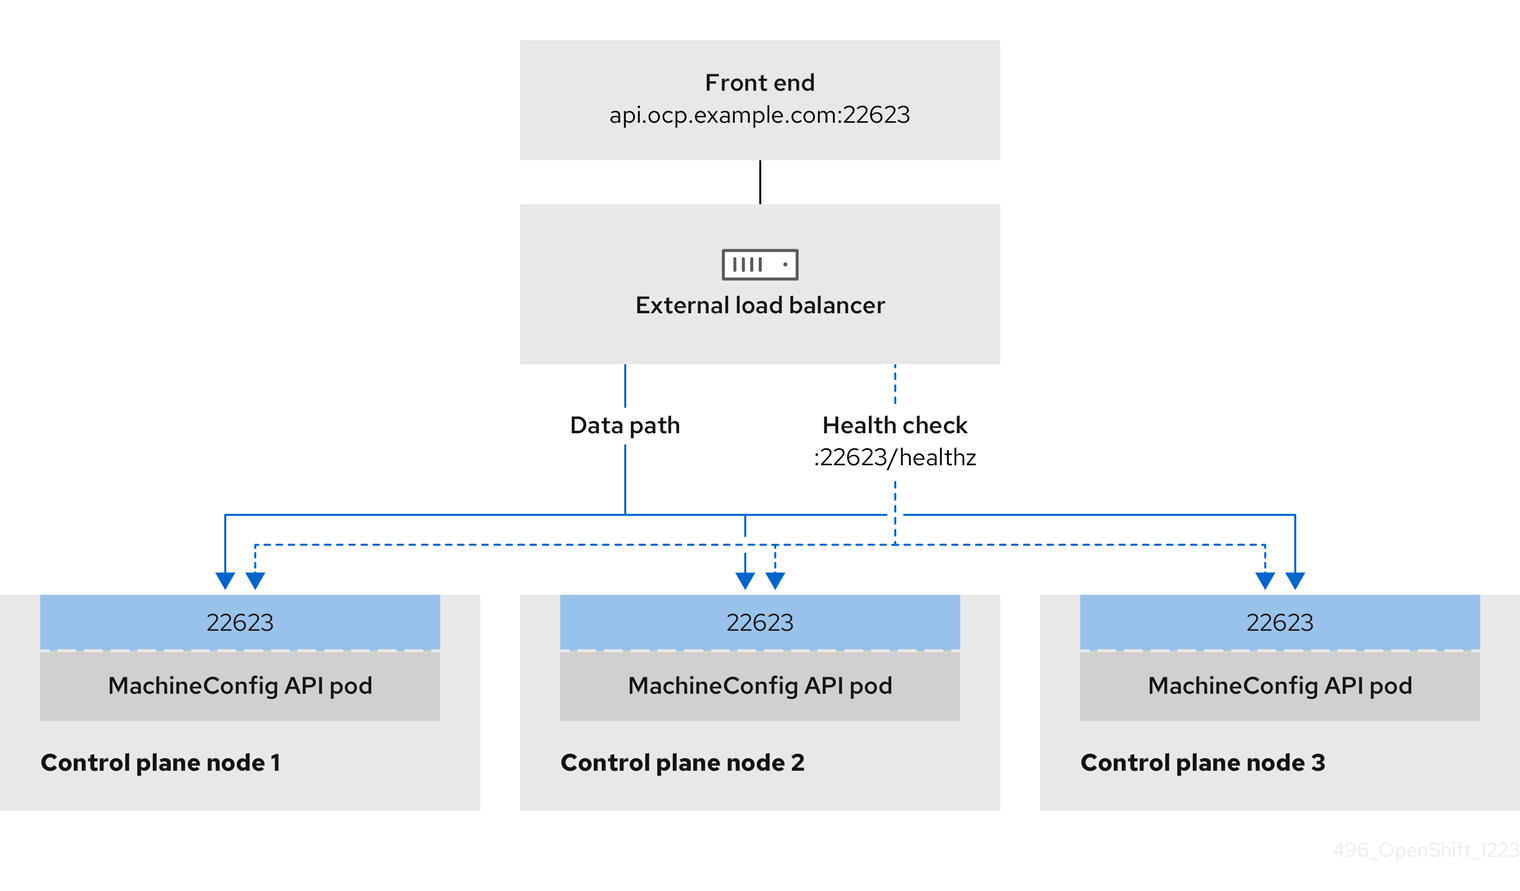 OpenShift Container Platform 환경에서 작동하는 OpenShift MachineConfig API의 네트워크 워크플로 예제를 보여주는 이미지입니다.